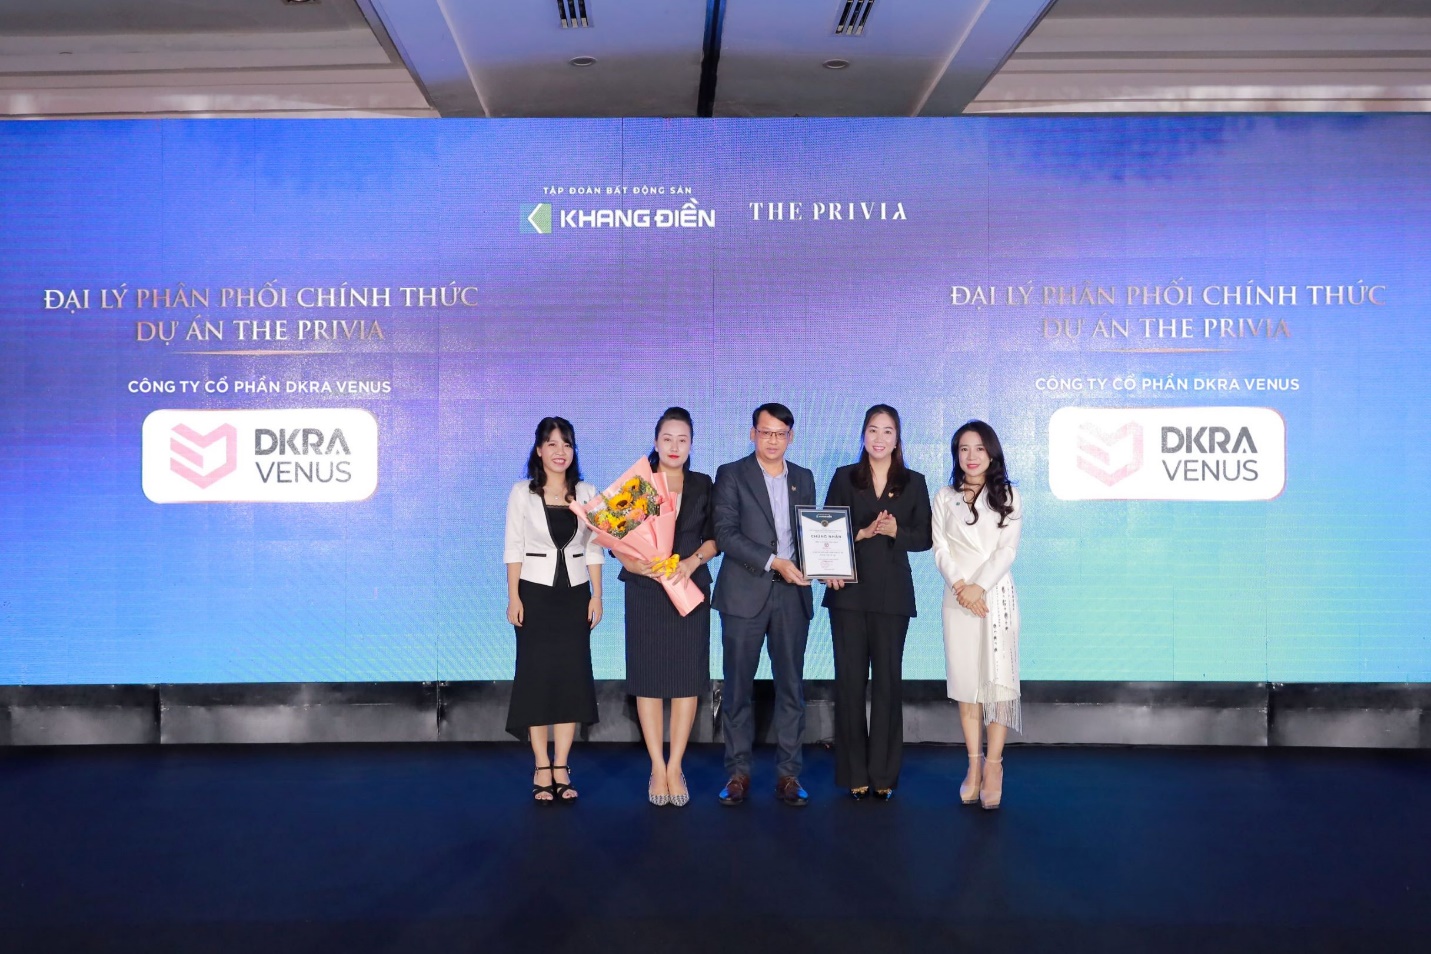 DKRA Venus trở thành đối tác phân phối chính thức của dự án The Privia - 1